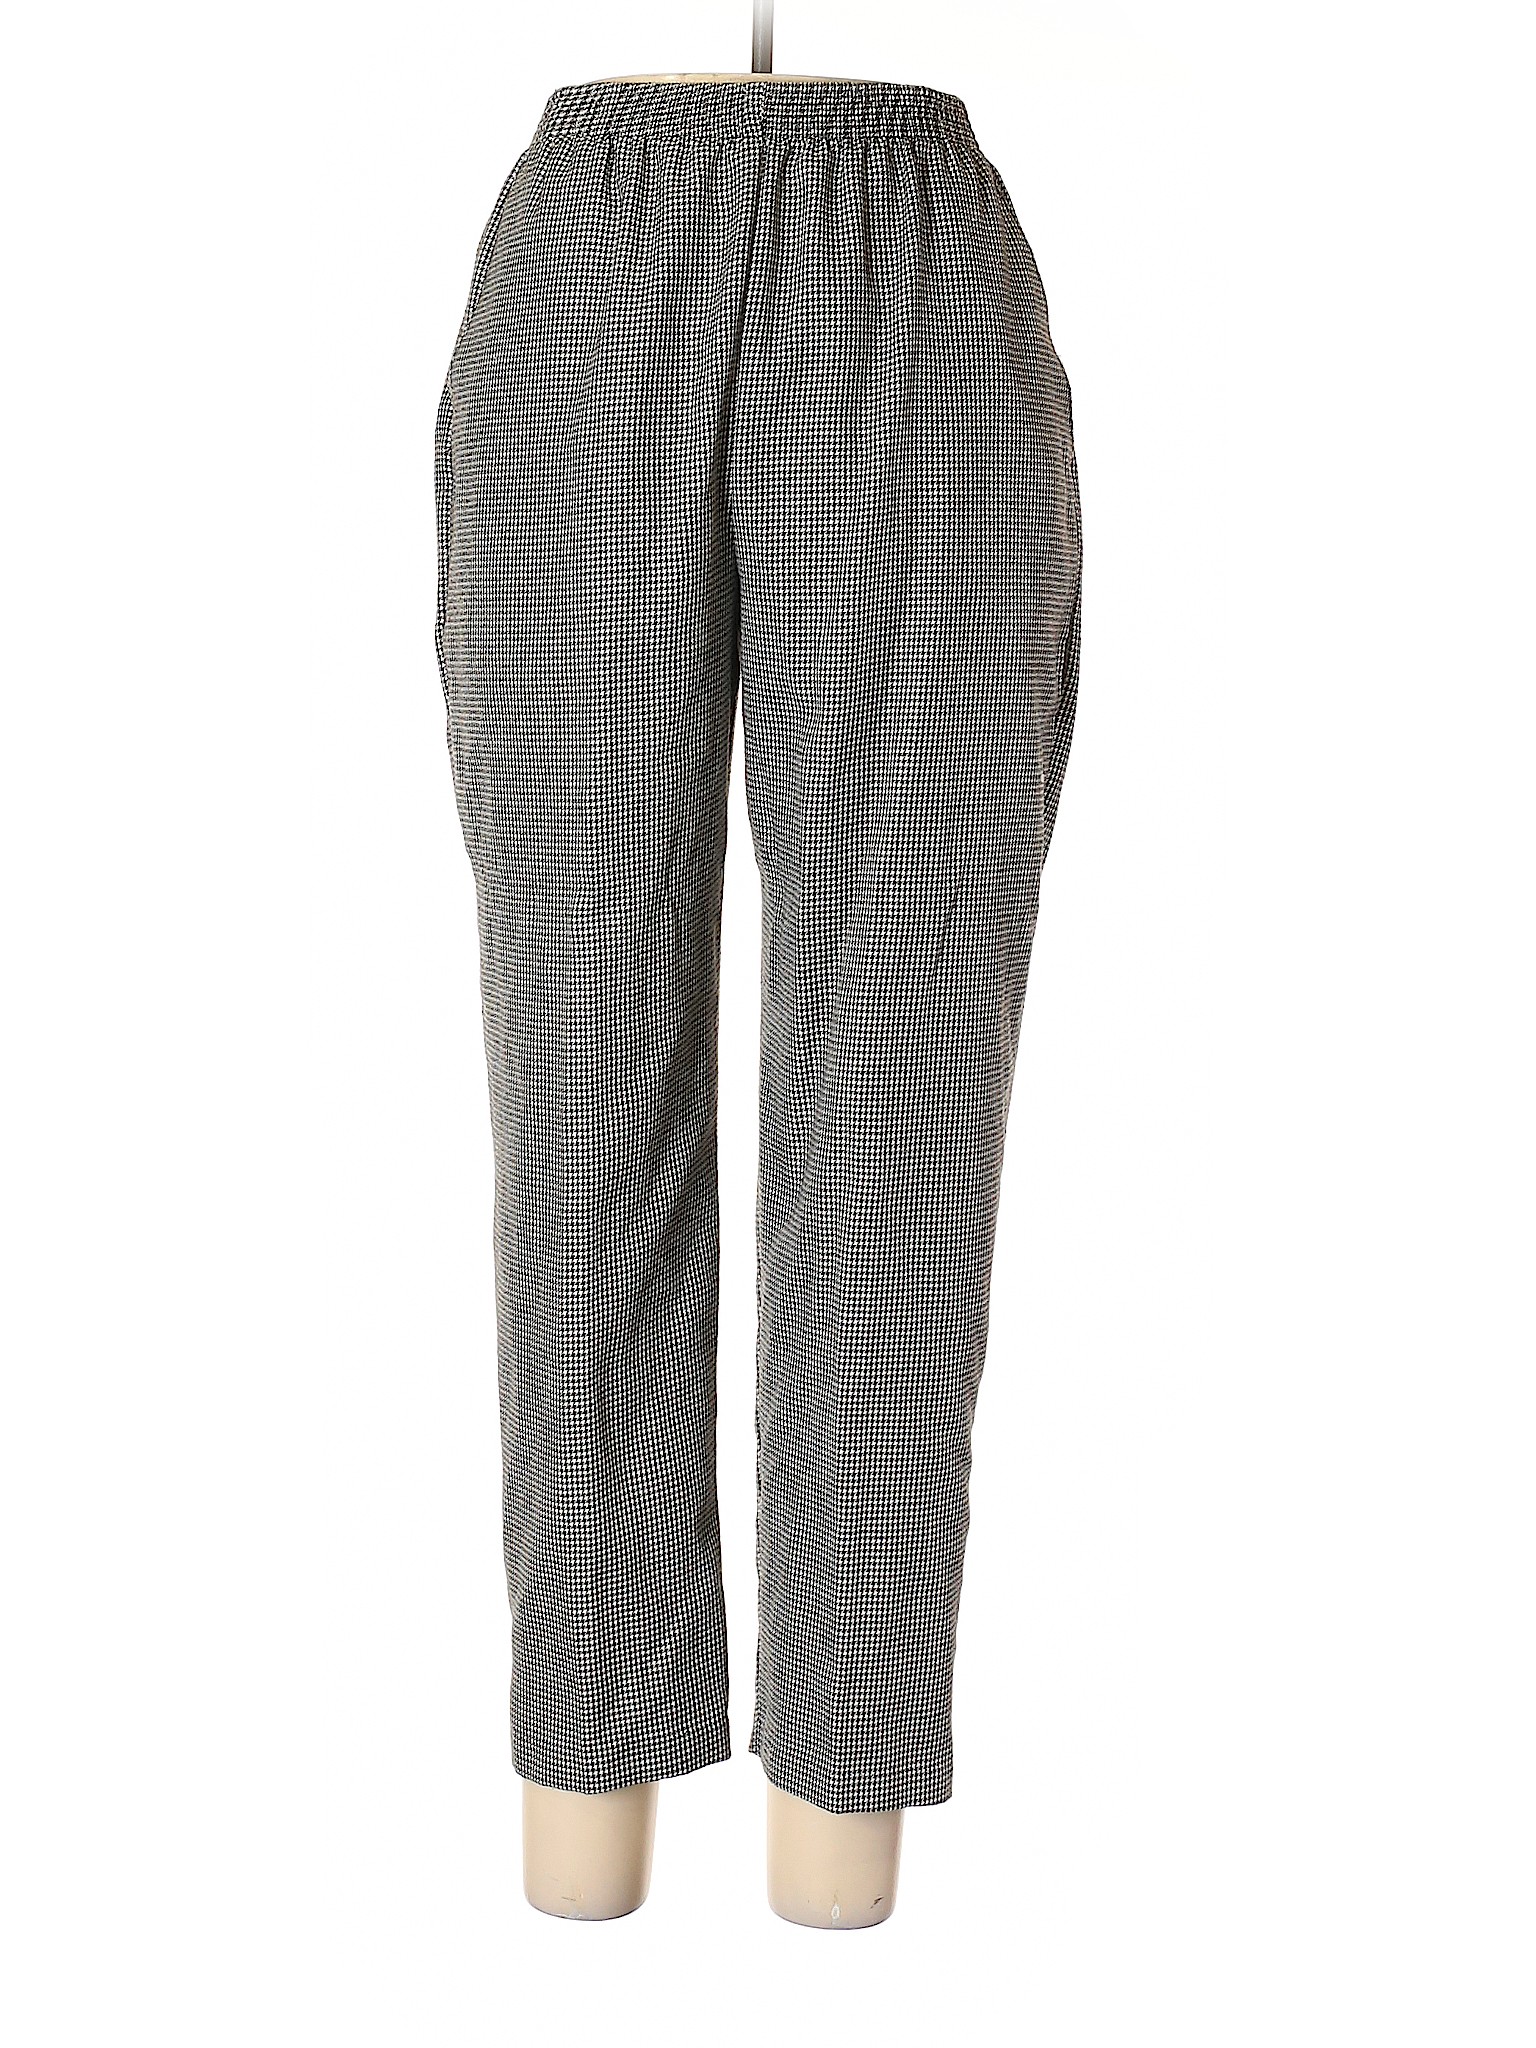 Briggs Women Gray Casual Pants 12 Petites | eBay